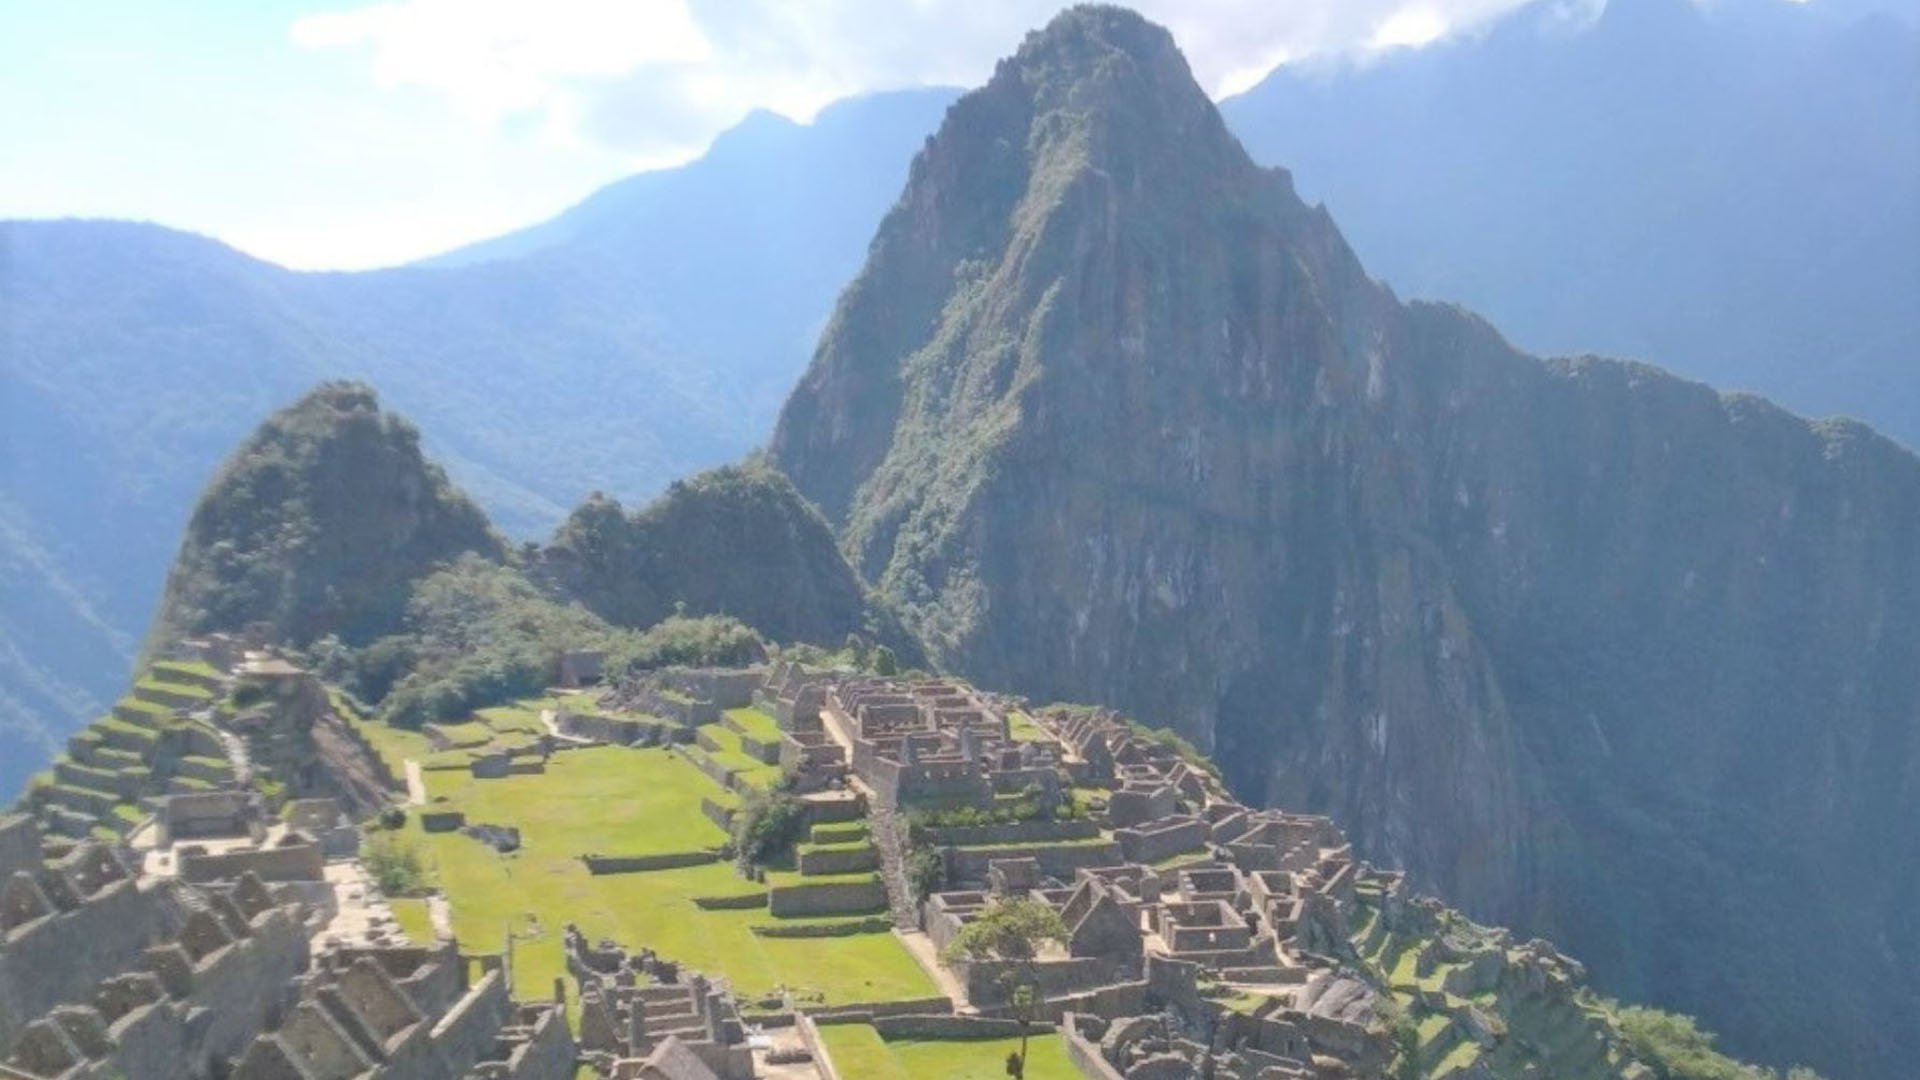 El Perú atrajo a 4.5 millones de turistas al año antes de la pandemia de Covid-19. (Andina)